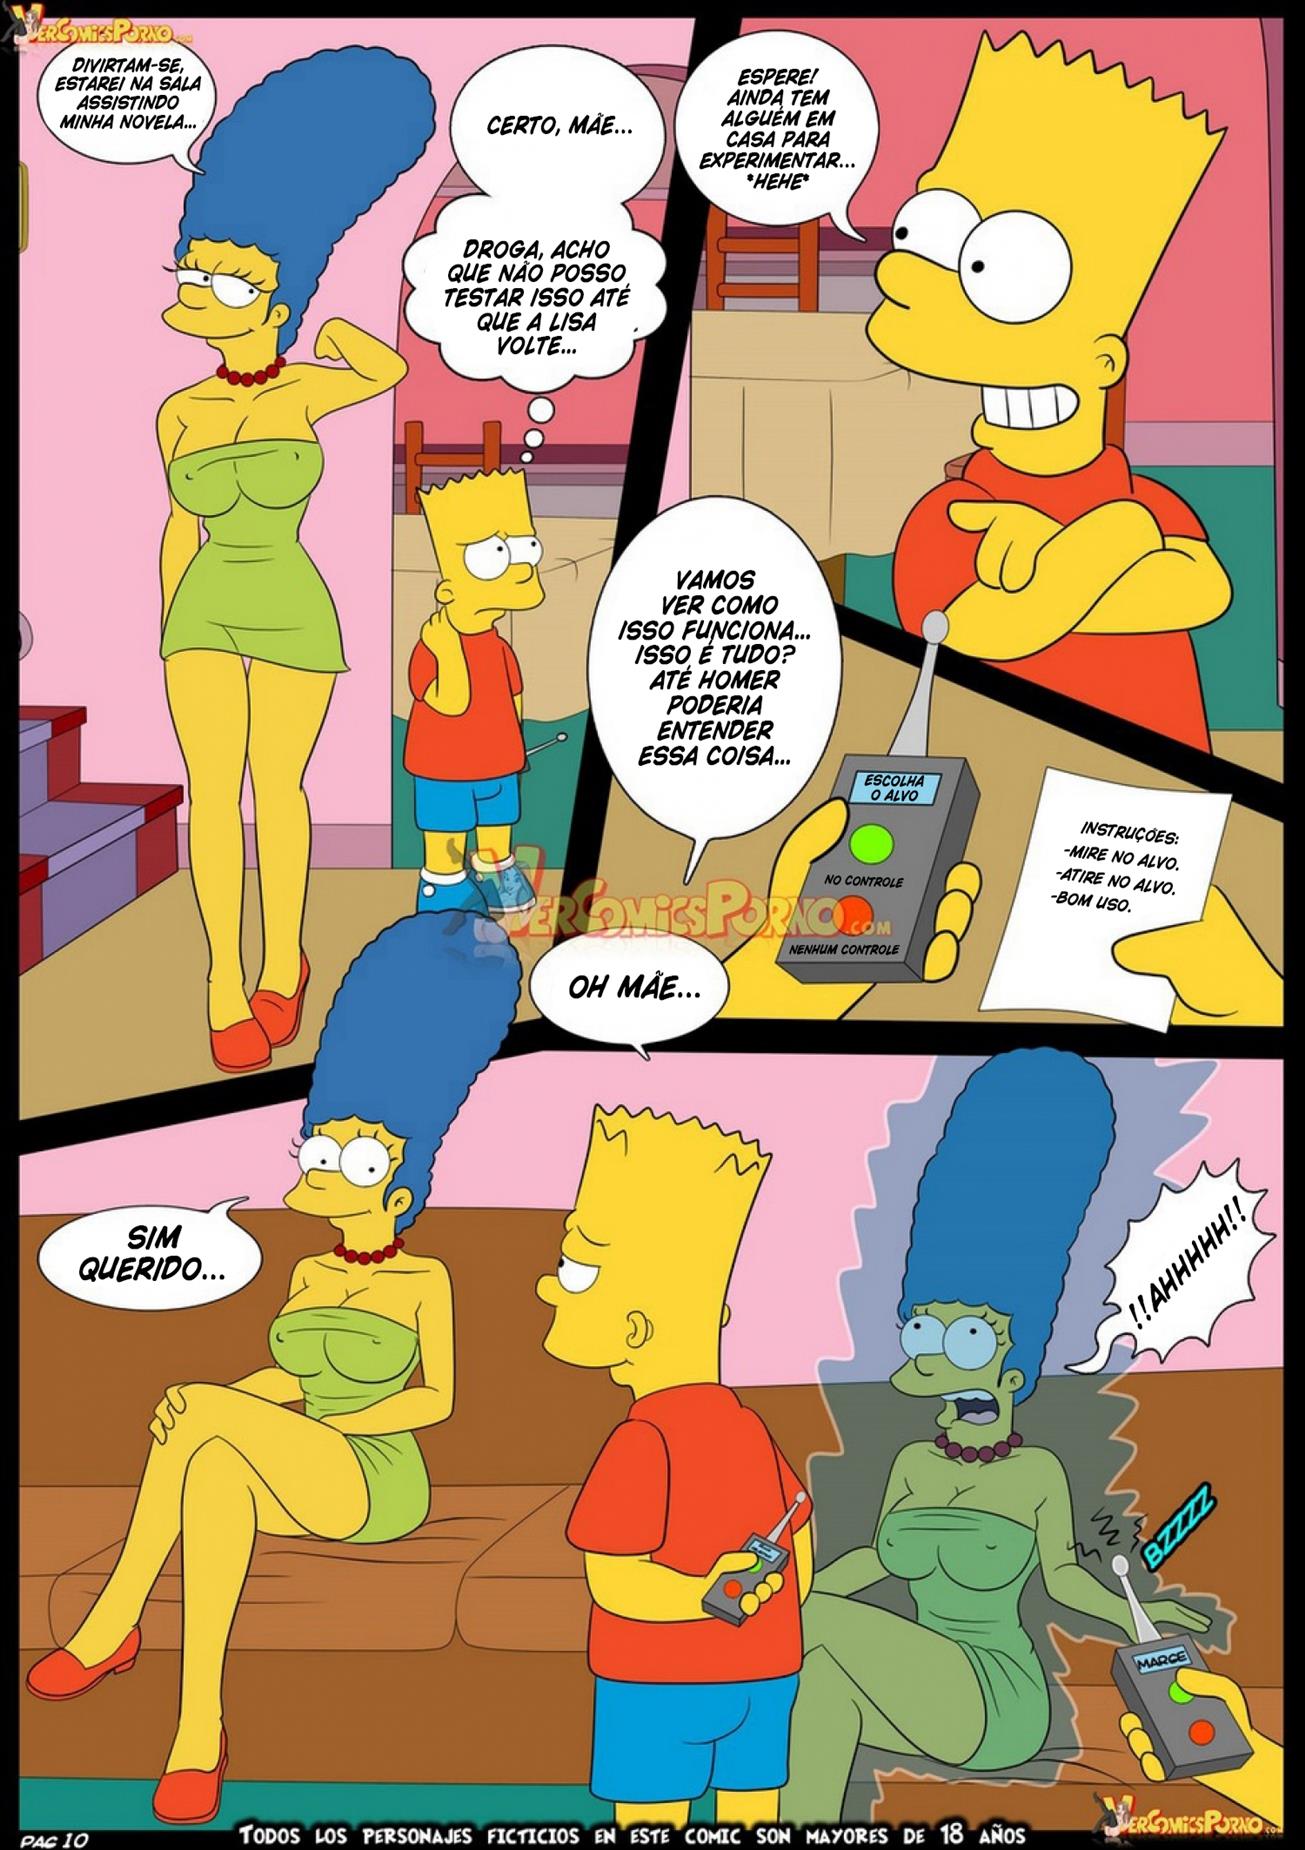 Simpson-Futurama: O controle mental - Foto 11